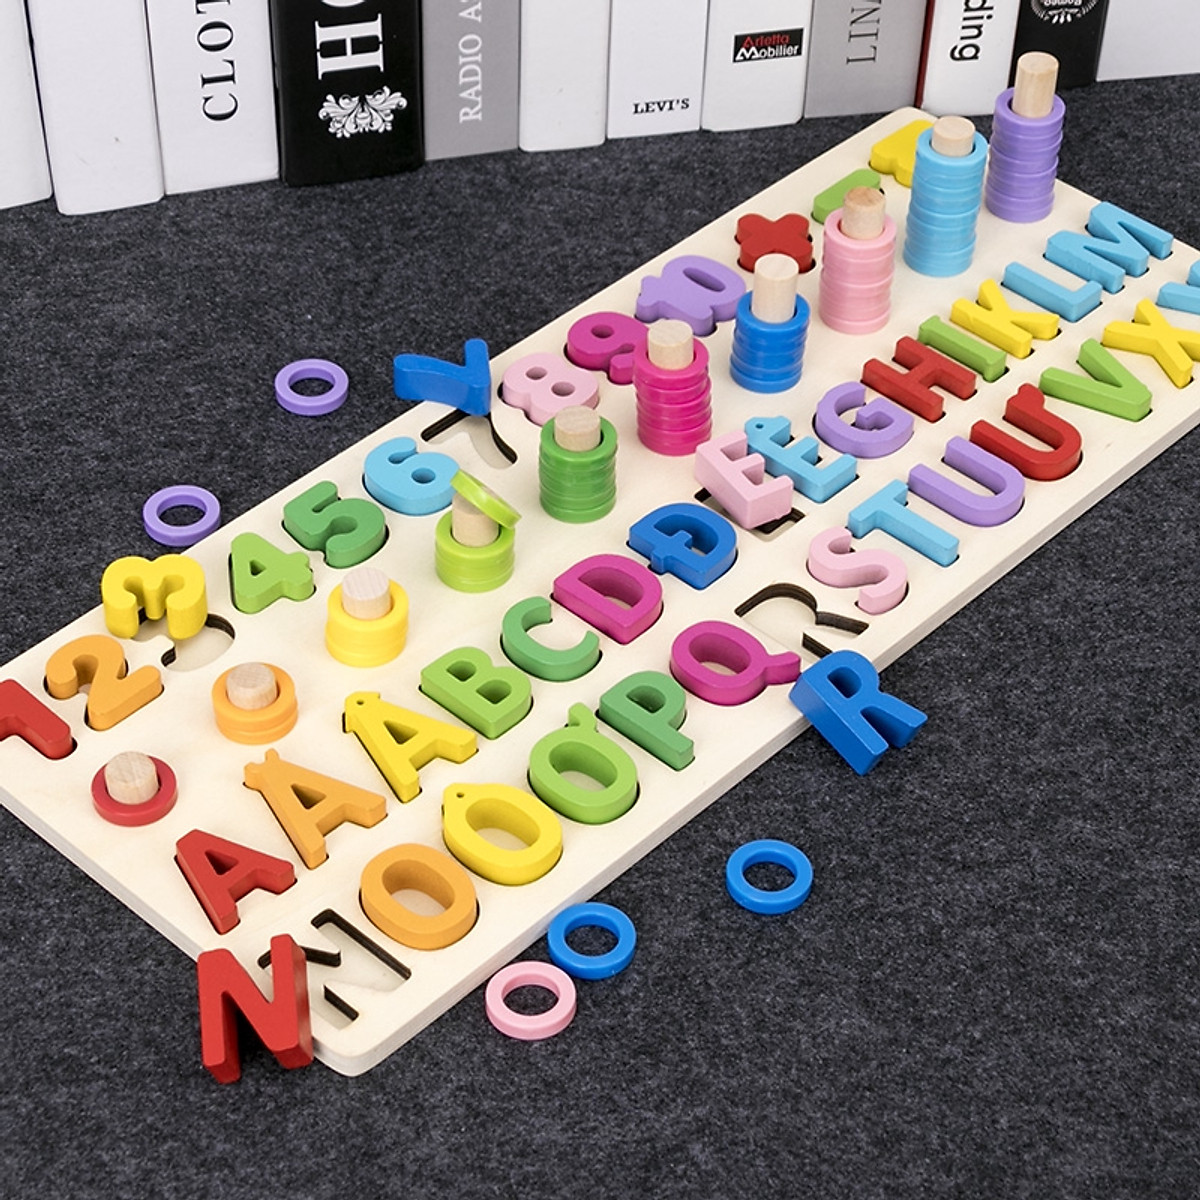 đồ chơi bảng chữ số xếp hình gỗ trí tuệ dành cho bé học chữ và đếm